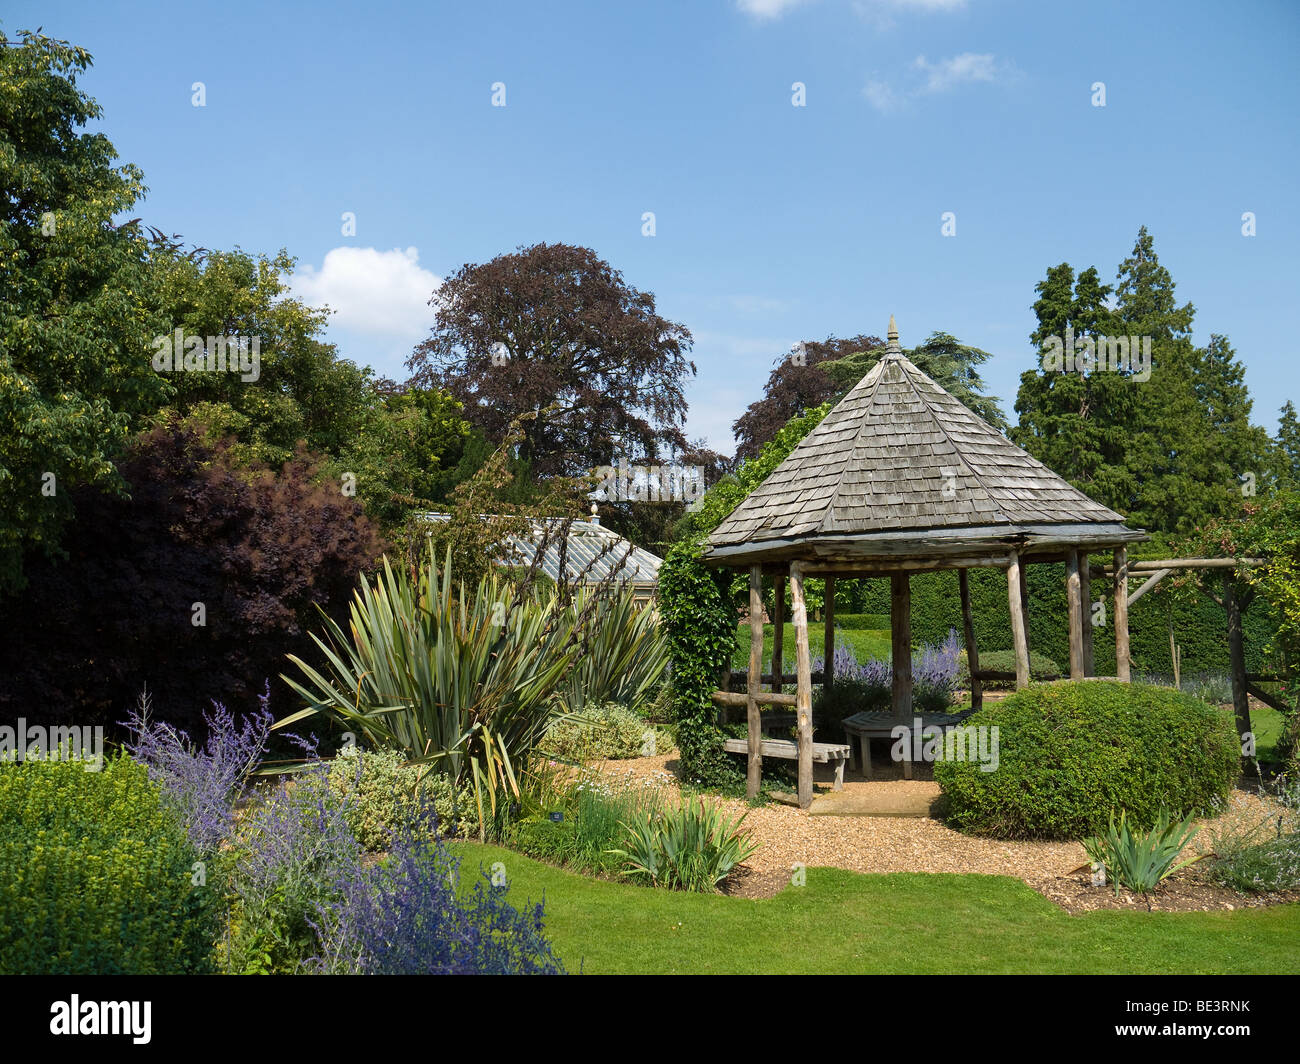 Eine typische englische Garten Szene komplett mit rustikalen Pergola. Keine Eigenschaft der National Trust. Stockfoto